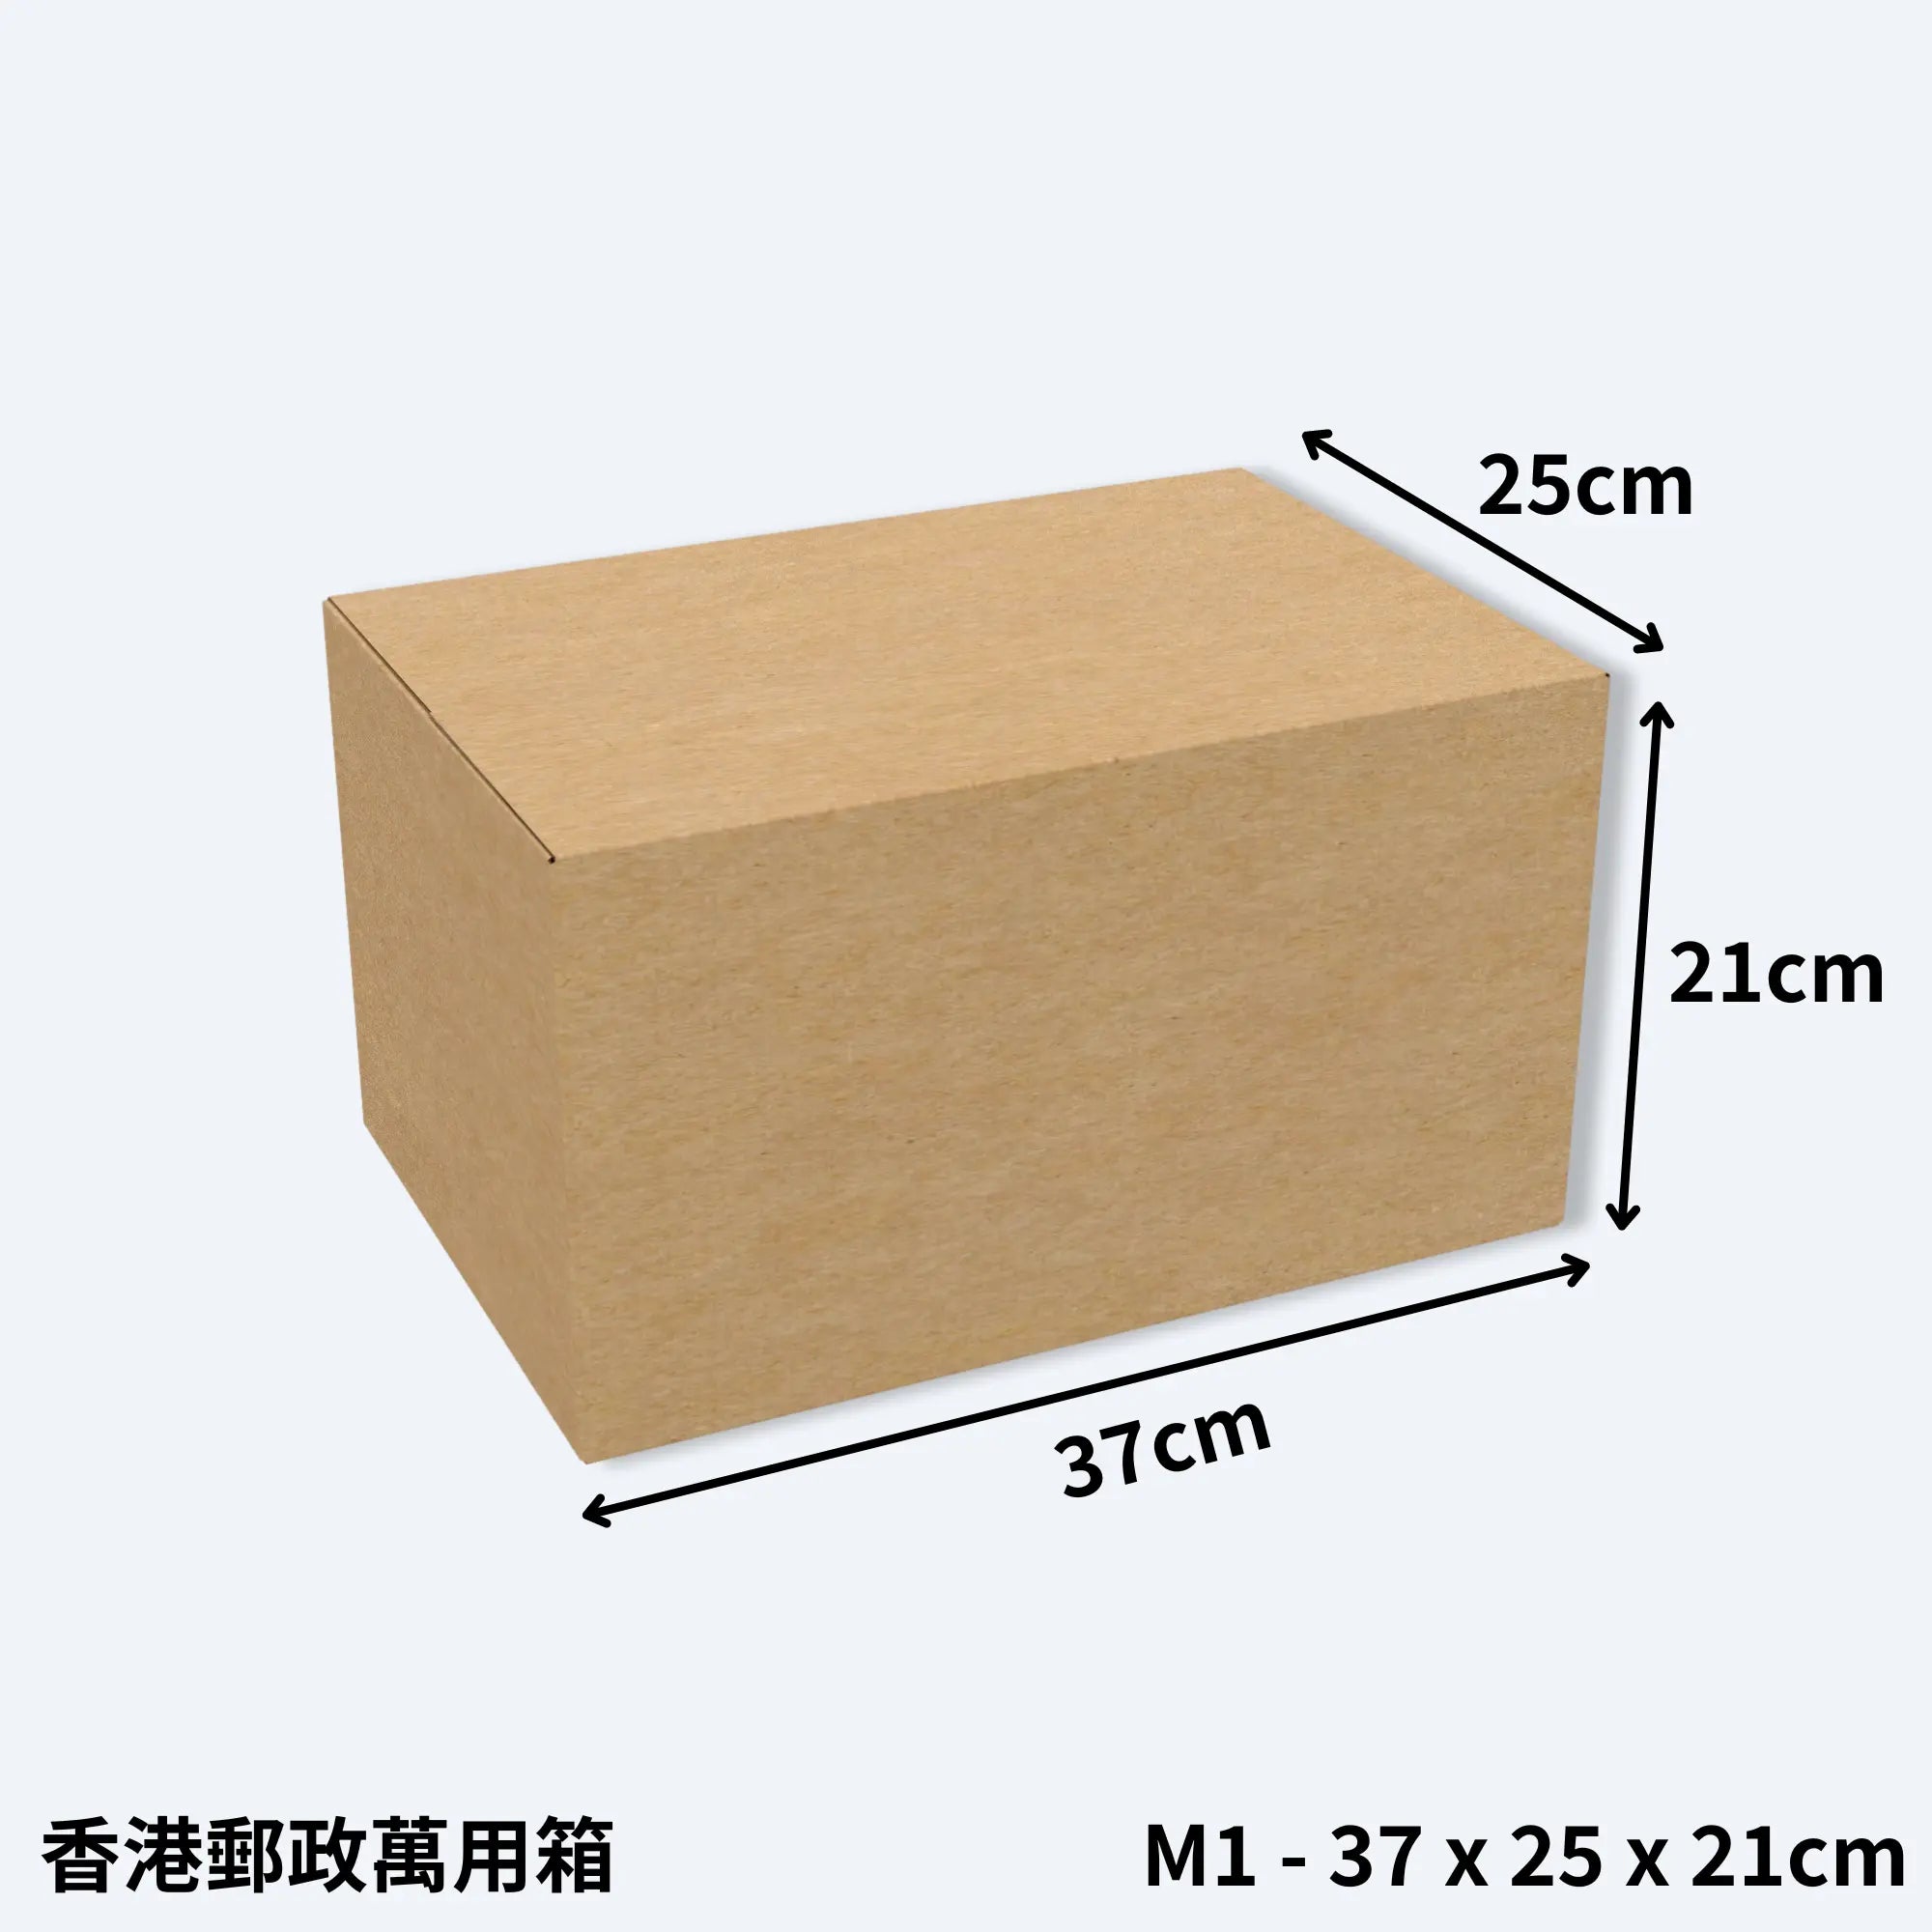 一個小型的香港郵政專用紙箱，型號M1萬用箱，尺寸為37cm x 25cm x 21cm，展示了紙箱的長寬高比例。